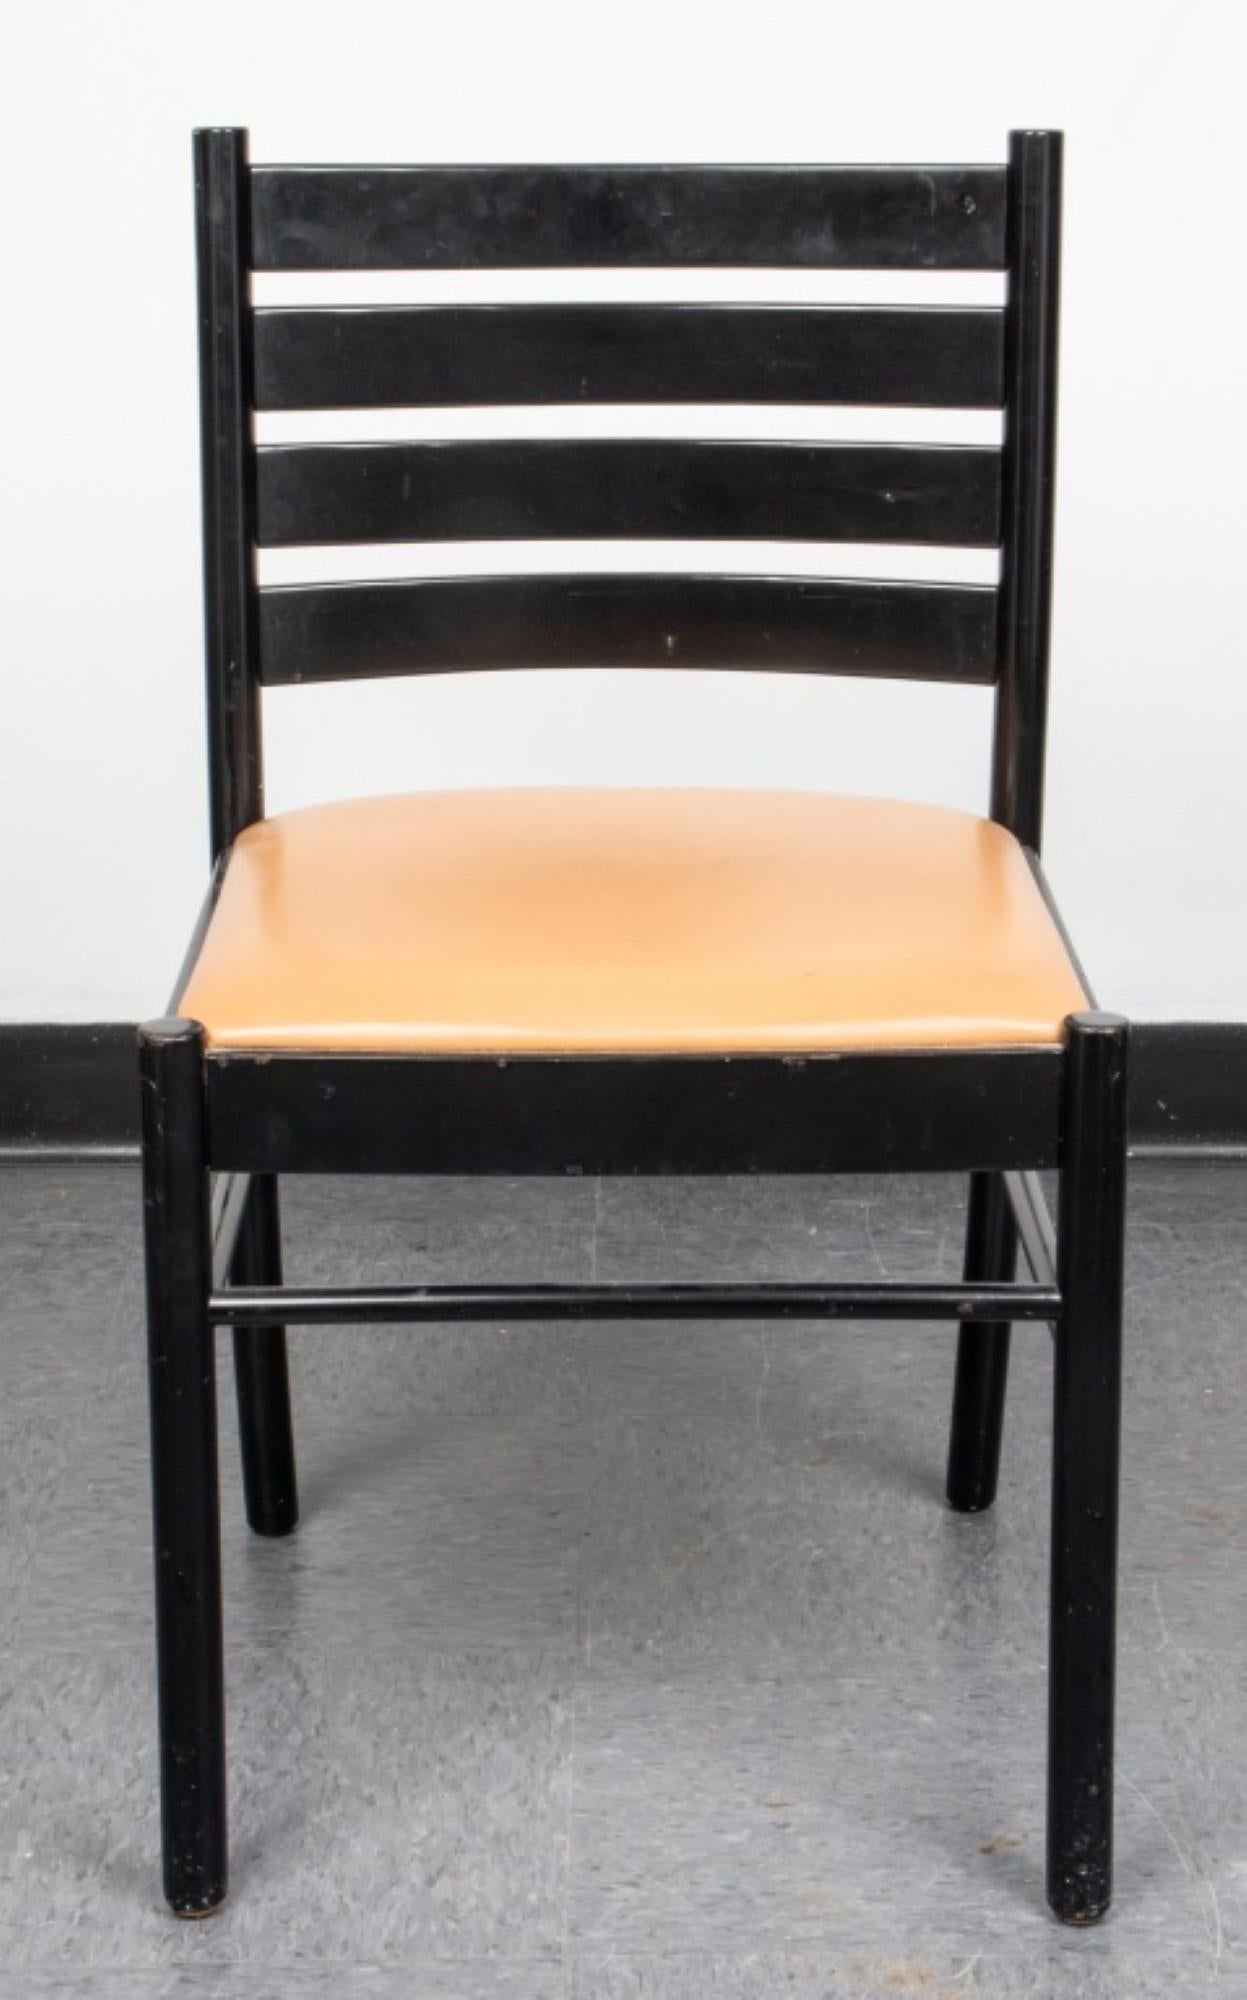 Satz von vier Atelier International Modern Ladder Back Side Chairs

Merkmale: Leiterrücken-Design, mit Atelier International Limited Labels auf der Unterseite.

Abmessungen: 31